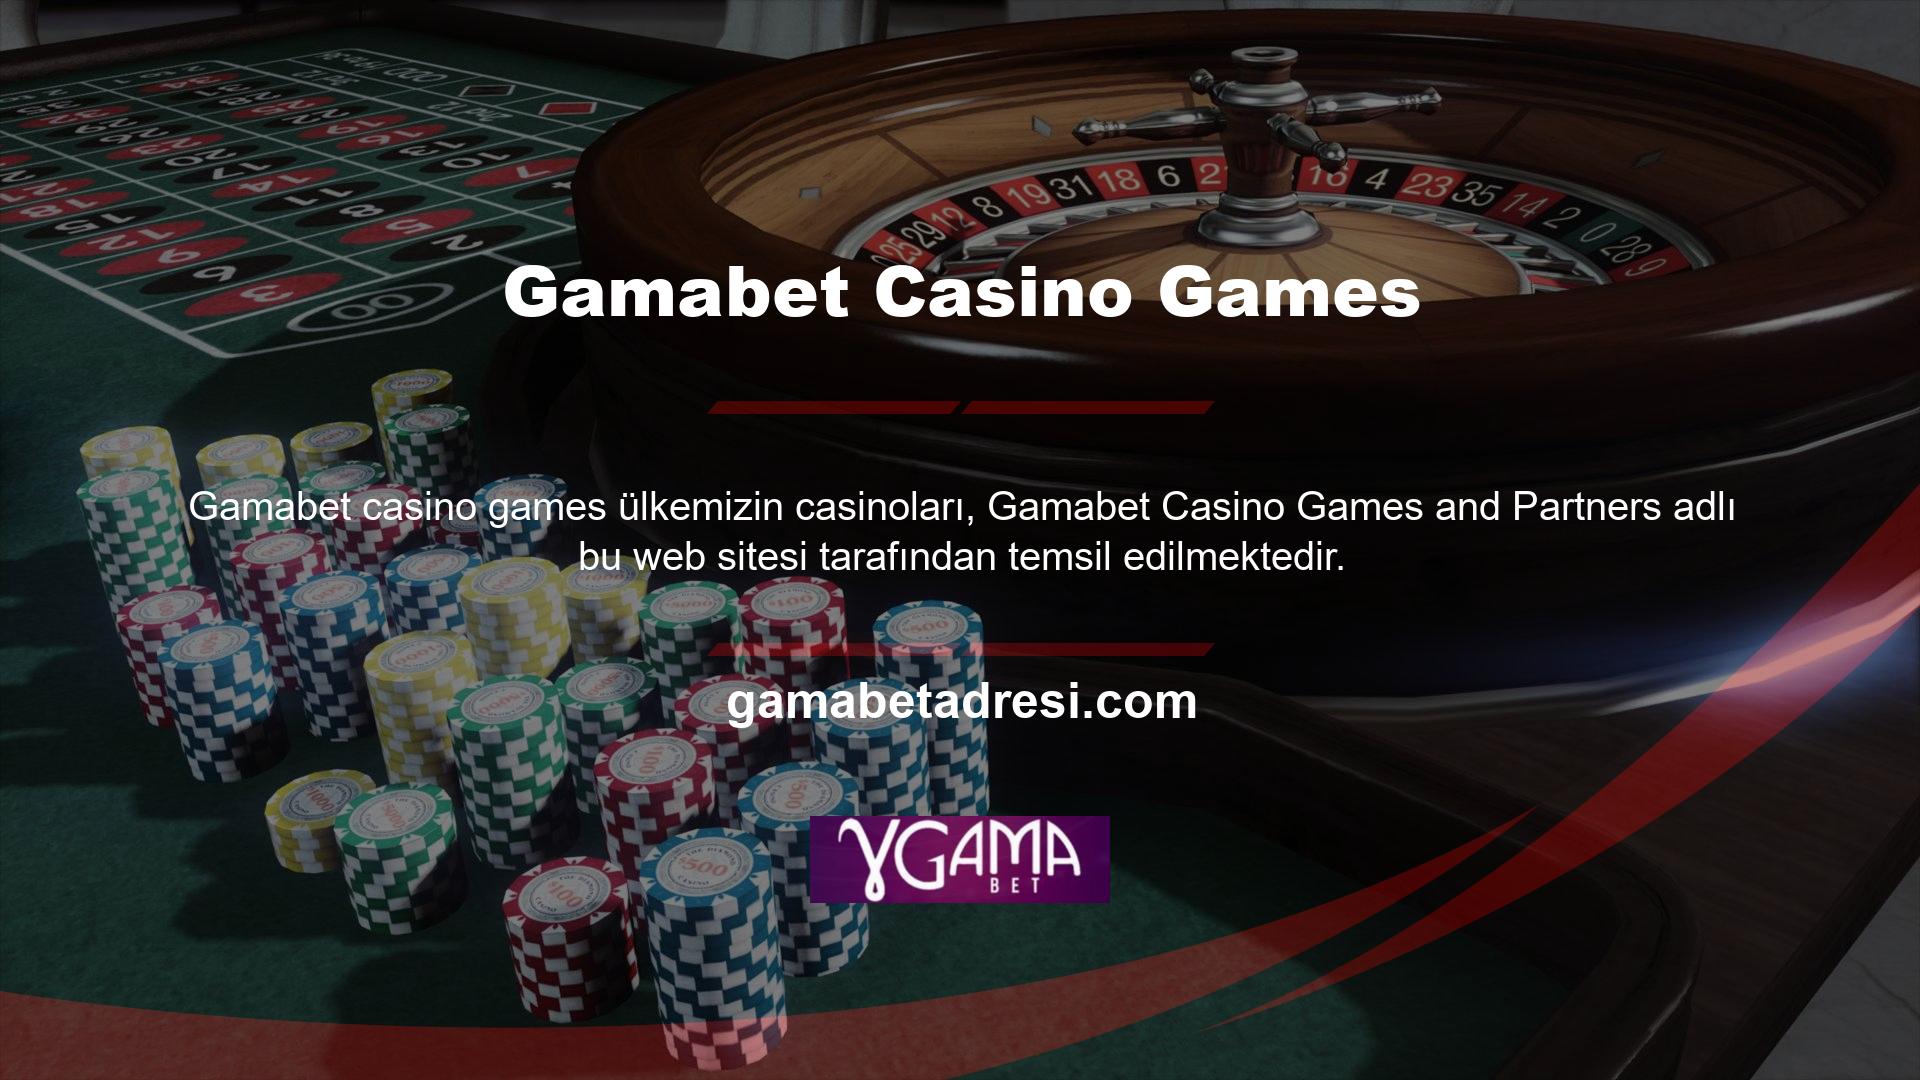 Bu kategoride lisanslı olmasına ve bağımsız faaliyet göstermesine rağmen casinolarda Casino tutkunlarının güvenini kazanmak için profesyonel bir ekiple çalışmaktadır